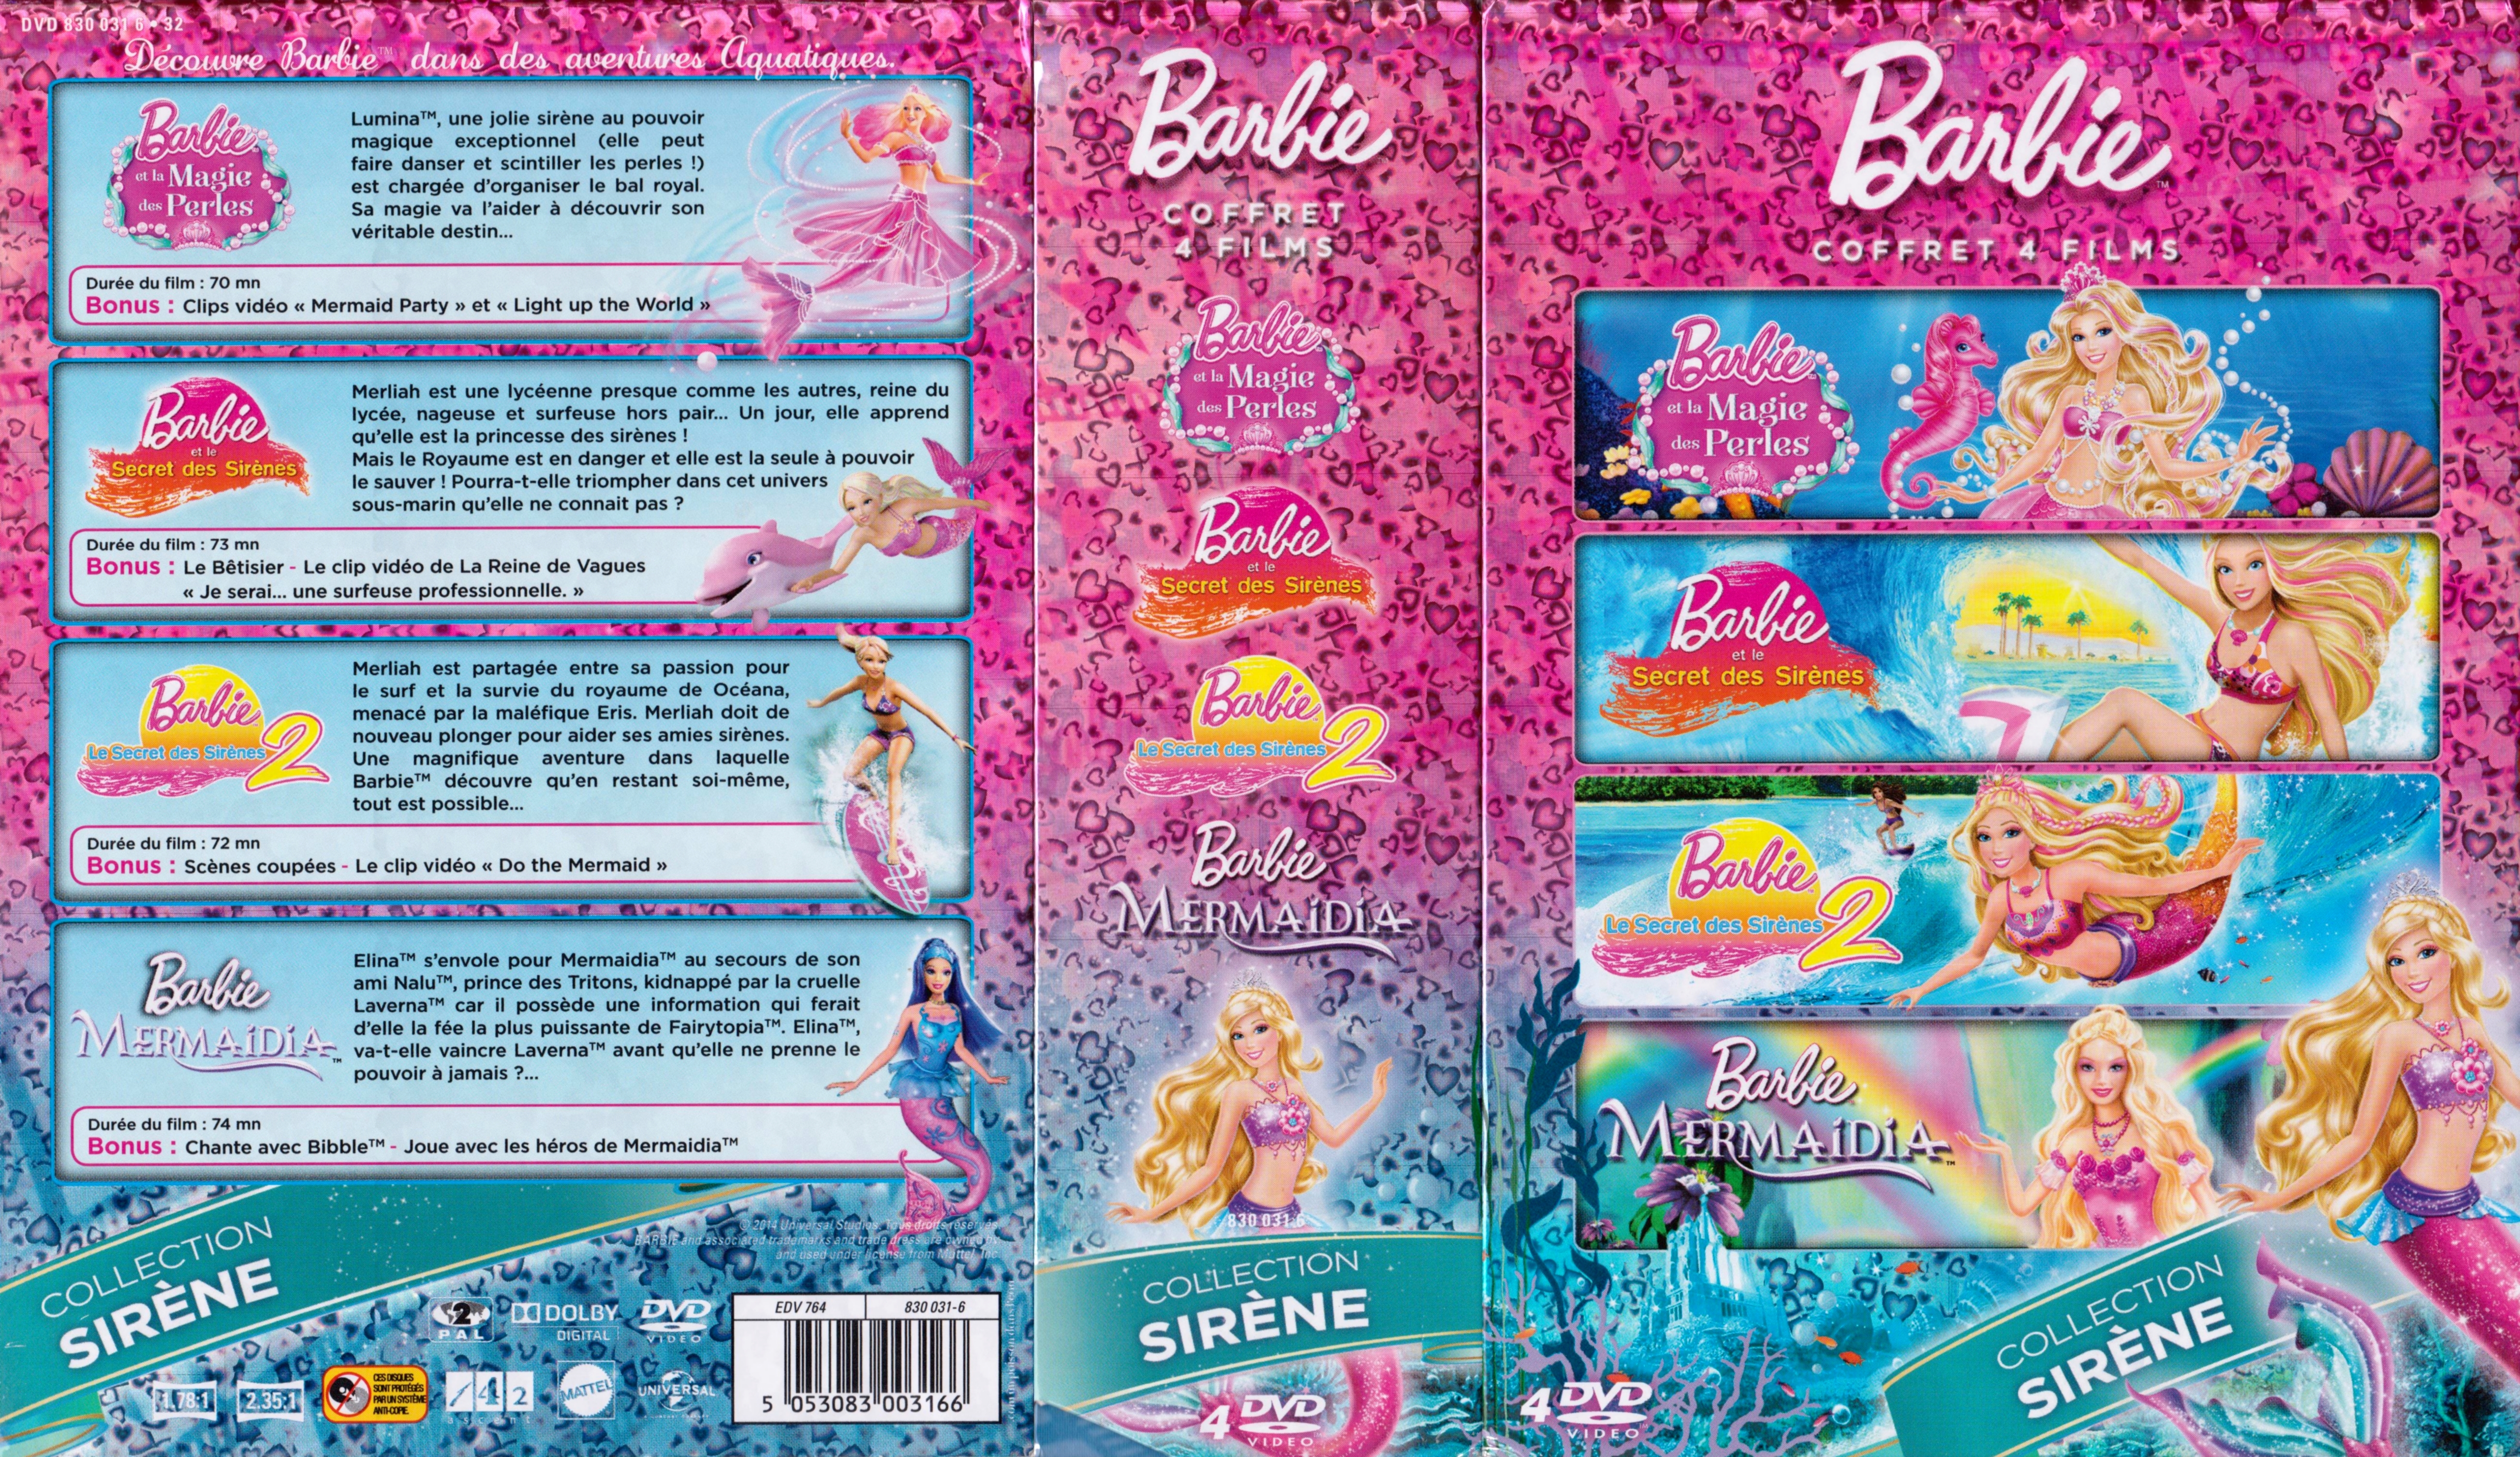 Jaquette DVD Barbie Collection Sirne COFFRET